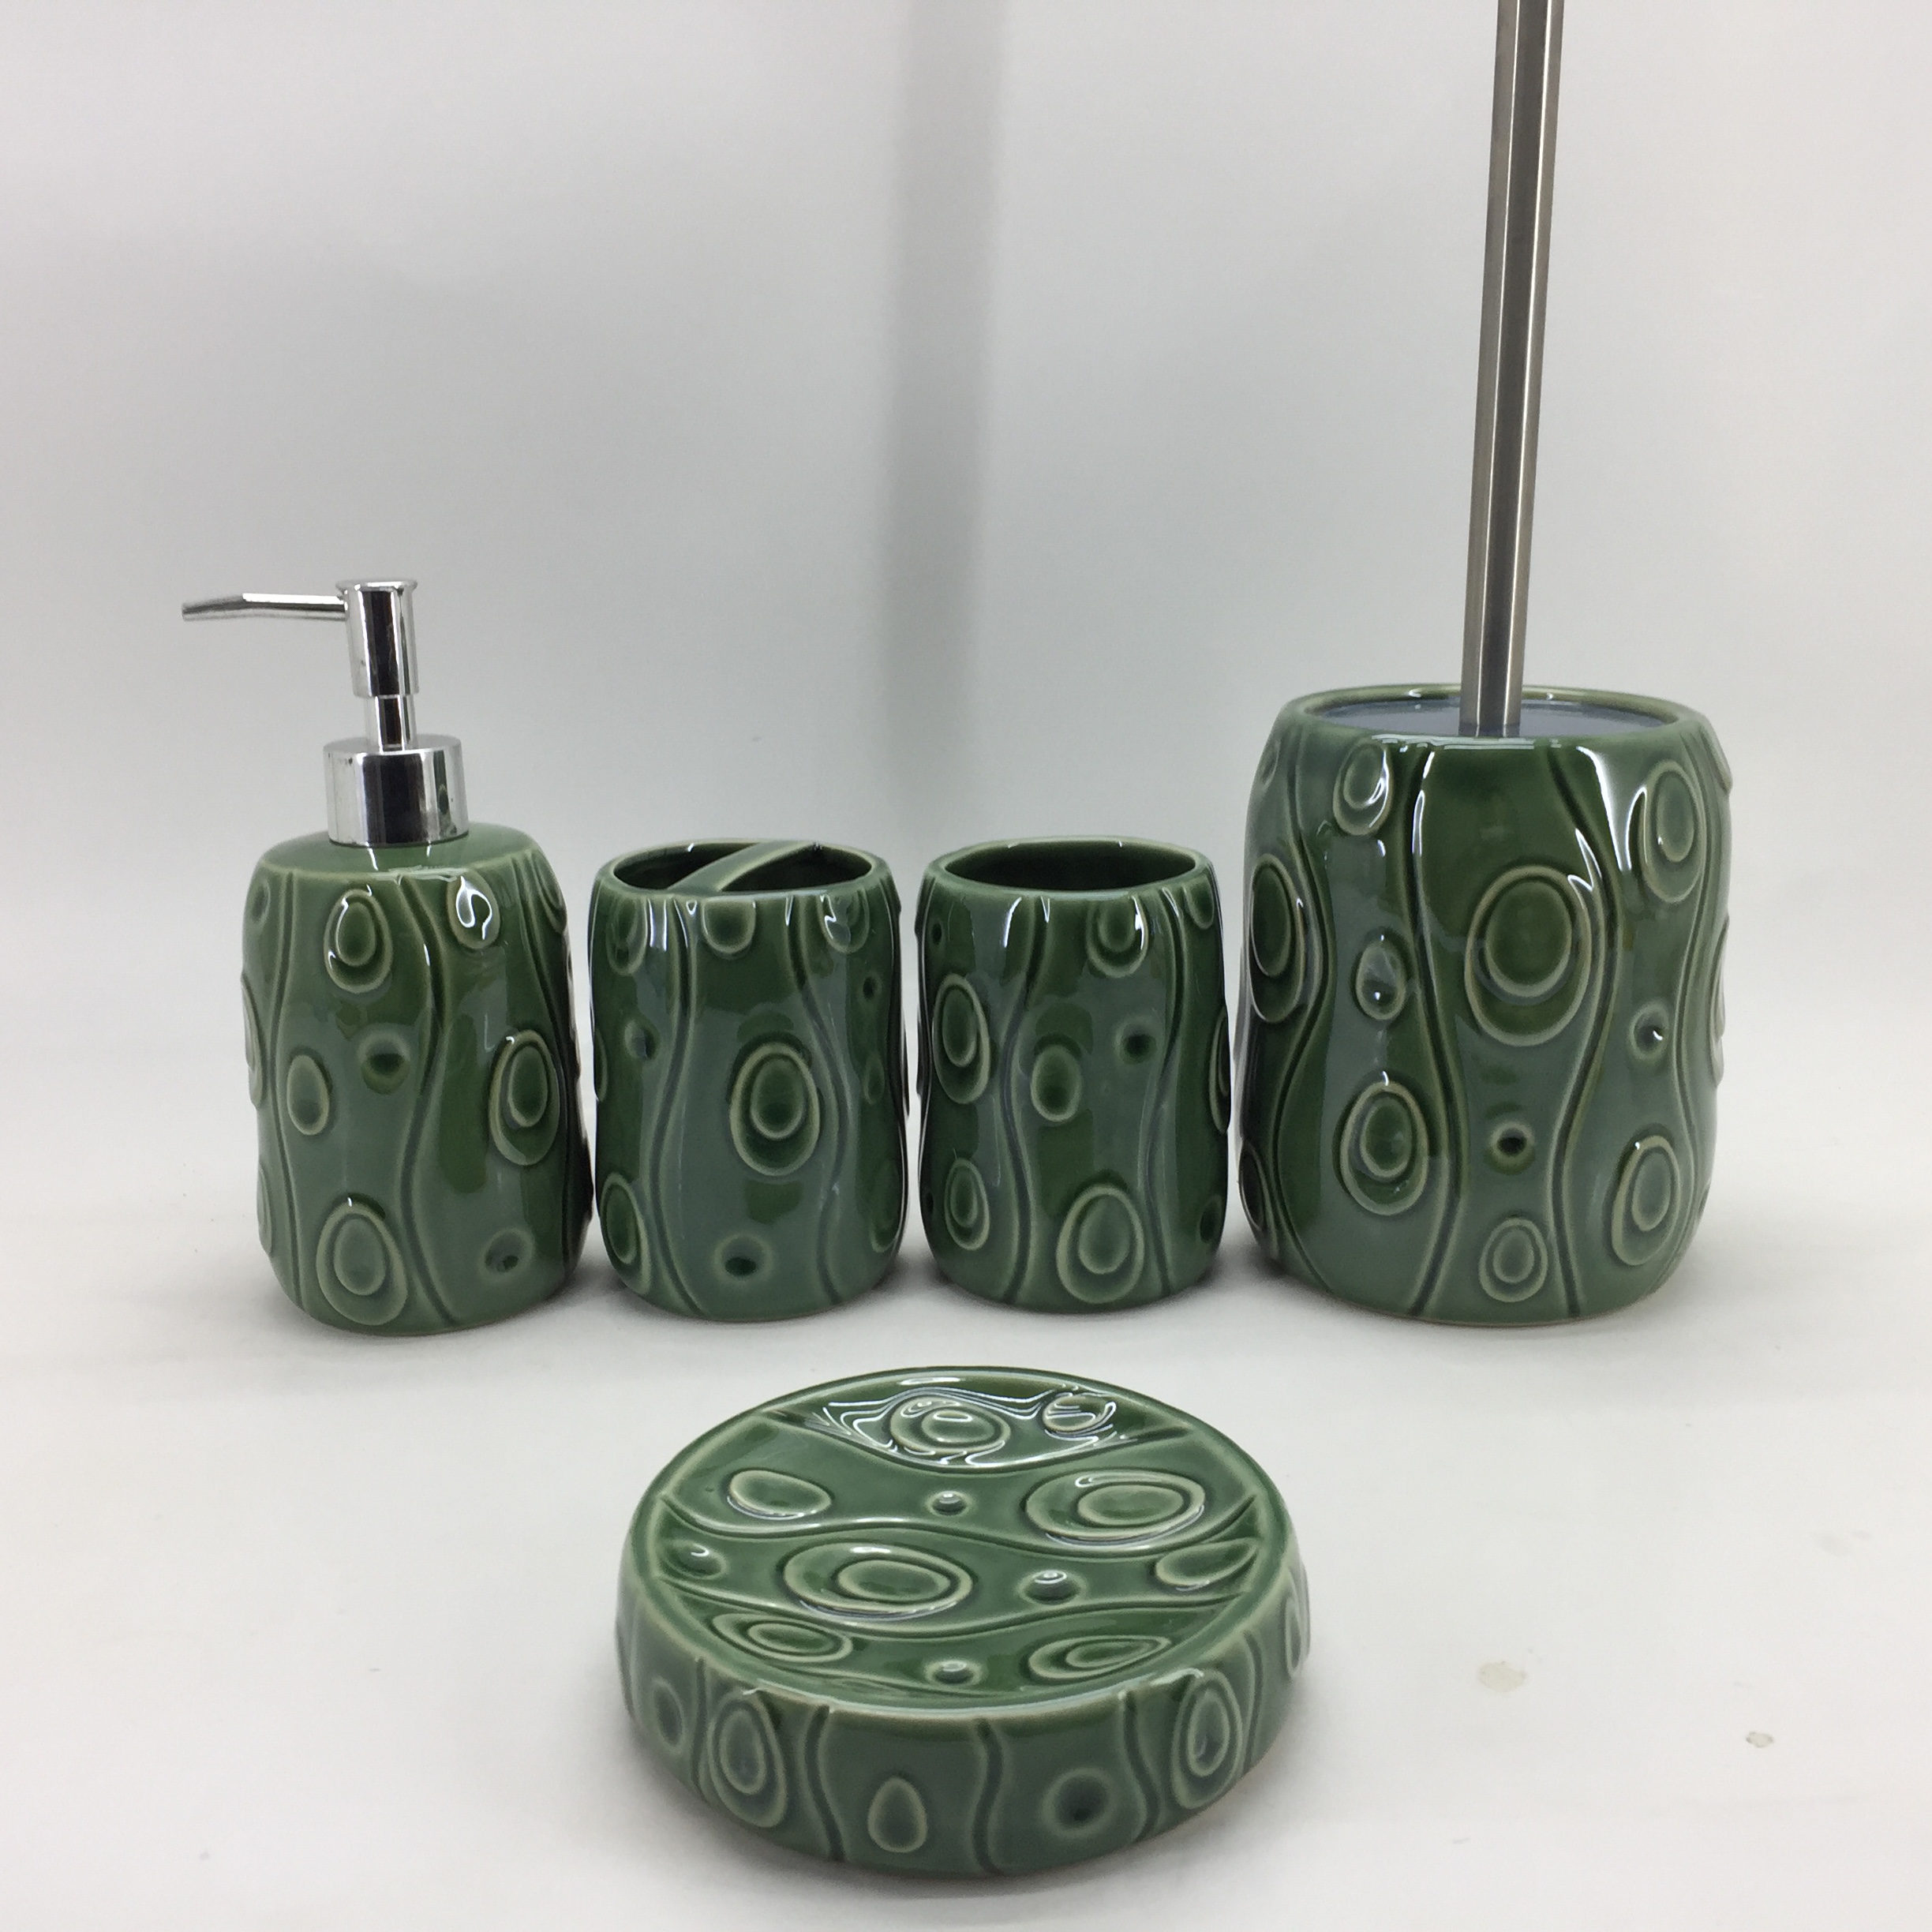 Durable Ceramic Bathroom Accessories Set